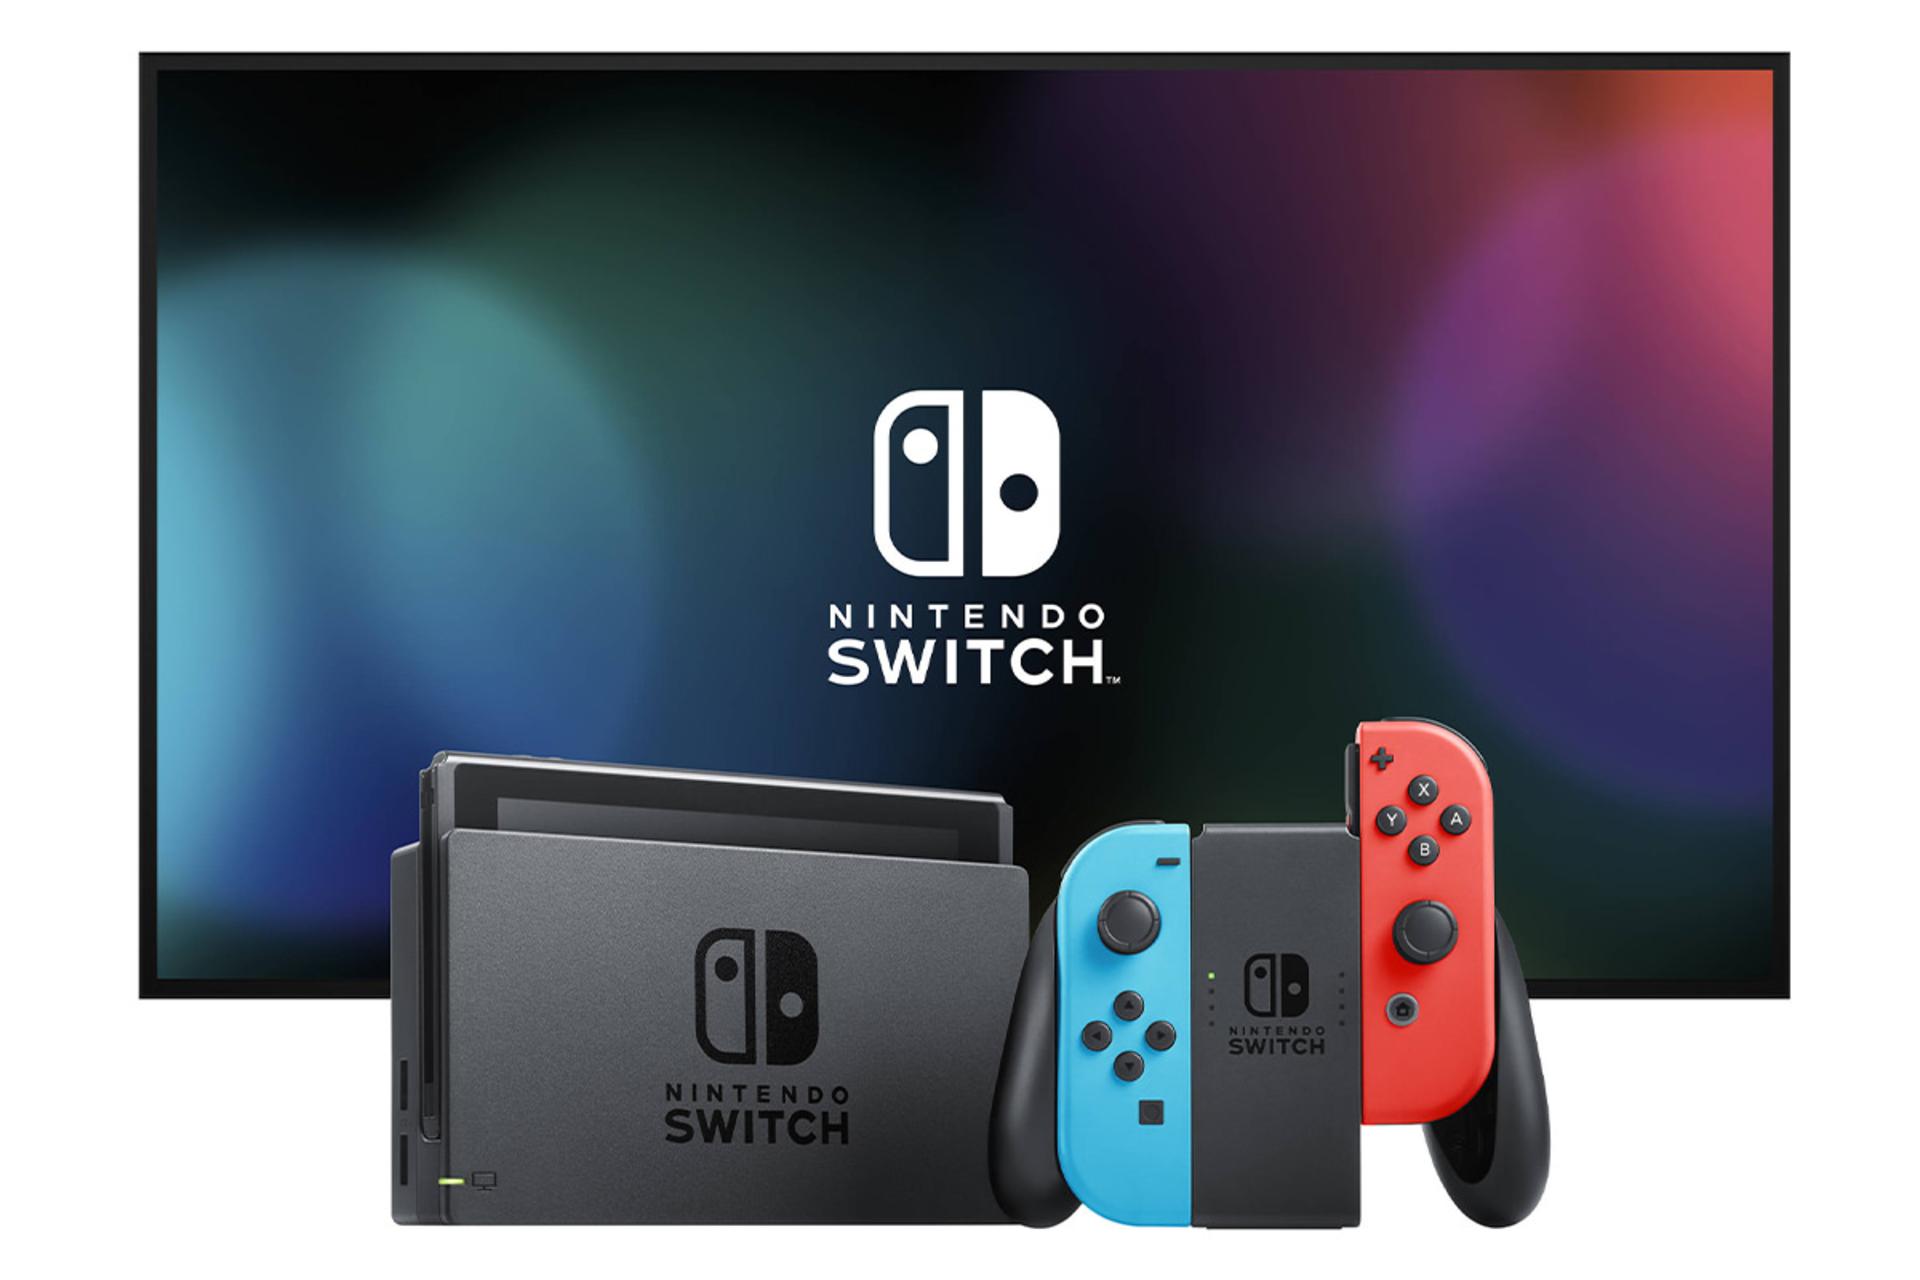 مرجع متخصصين ايران دسته نينتندو سوييچ با جويكان هاي آبي و قرمز به همراه با داك و خود كنسول / Nintendo Switch